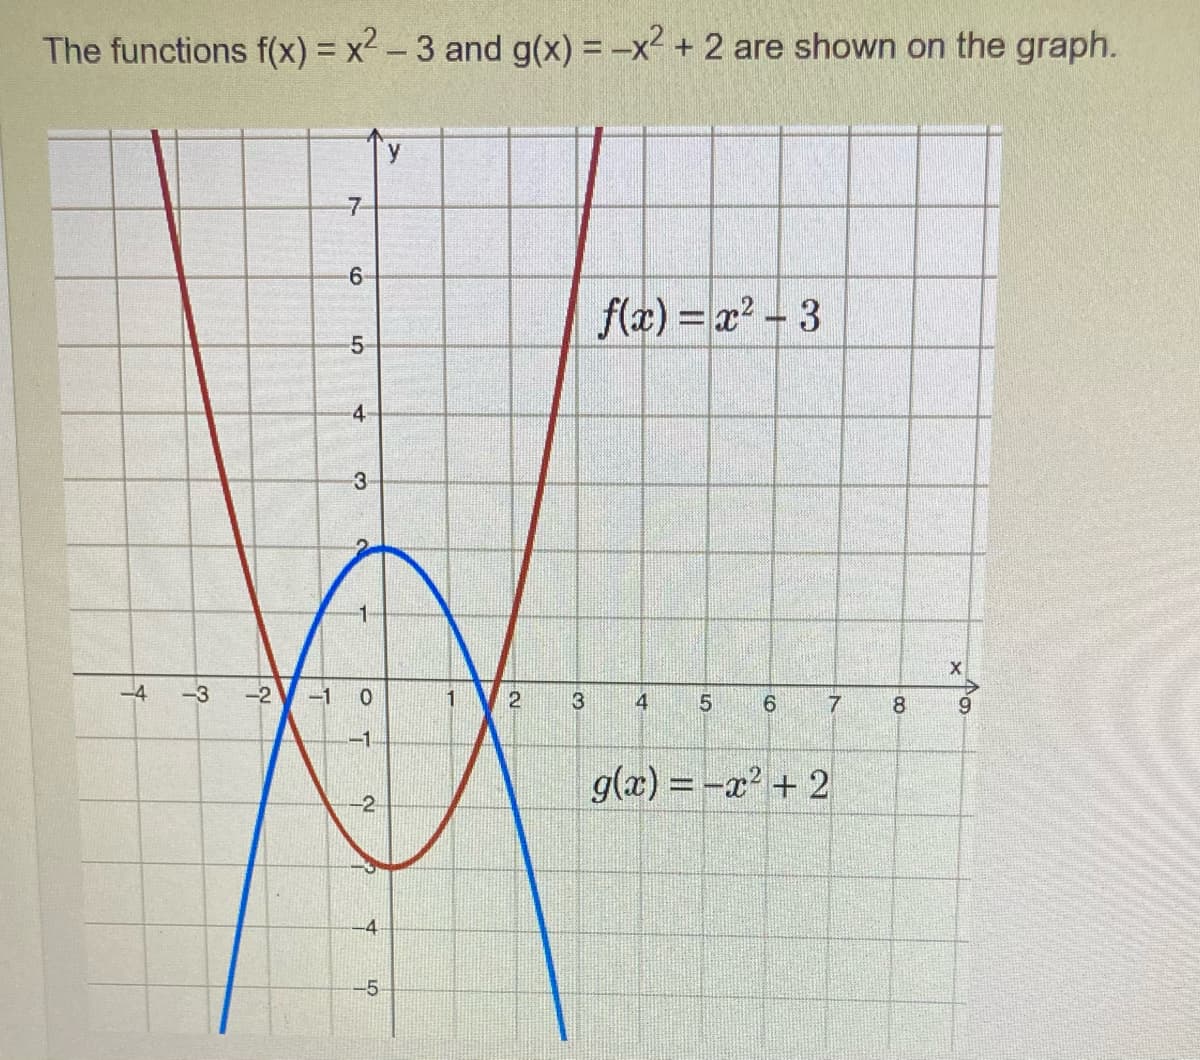 The functions f(x) = x² - 3 and g(x) = -x² + 2 are shown on the graph.
f(x)=x²-3
3
4
5
6
7
g(x) = -x² + 2
+
-3 -2
-1
7
-6
01
5-
4
3
0
-1
-2
-4
-5
K
1
2
8
X
9